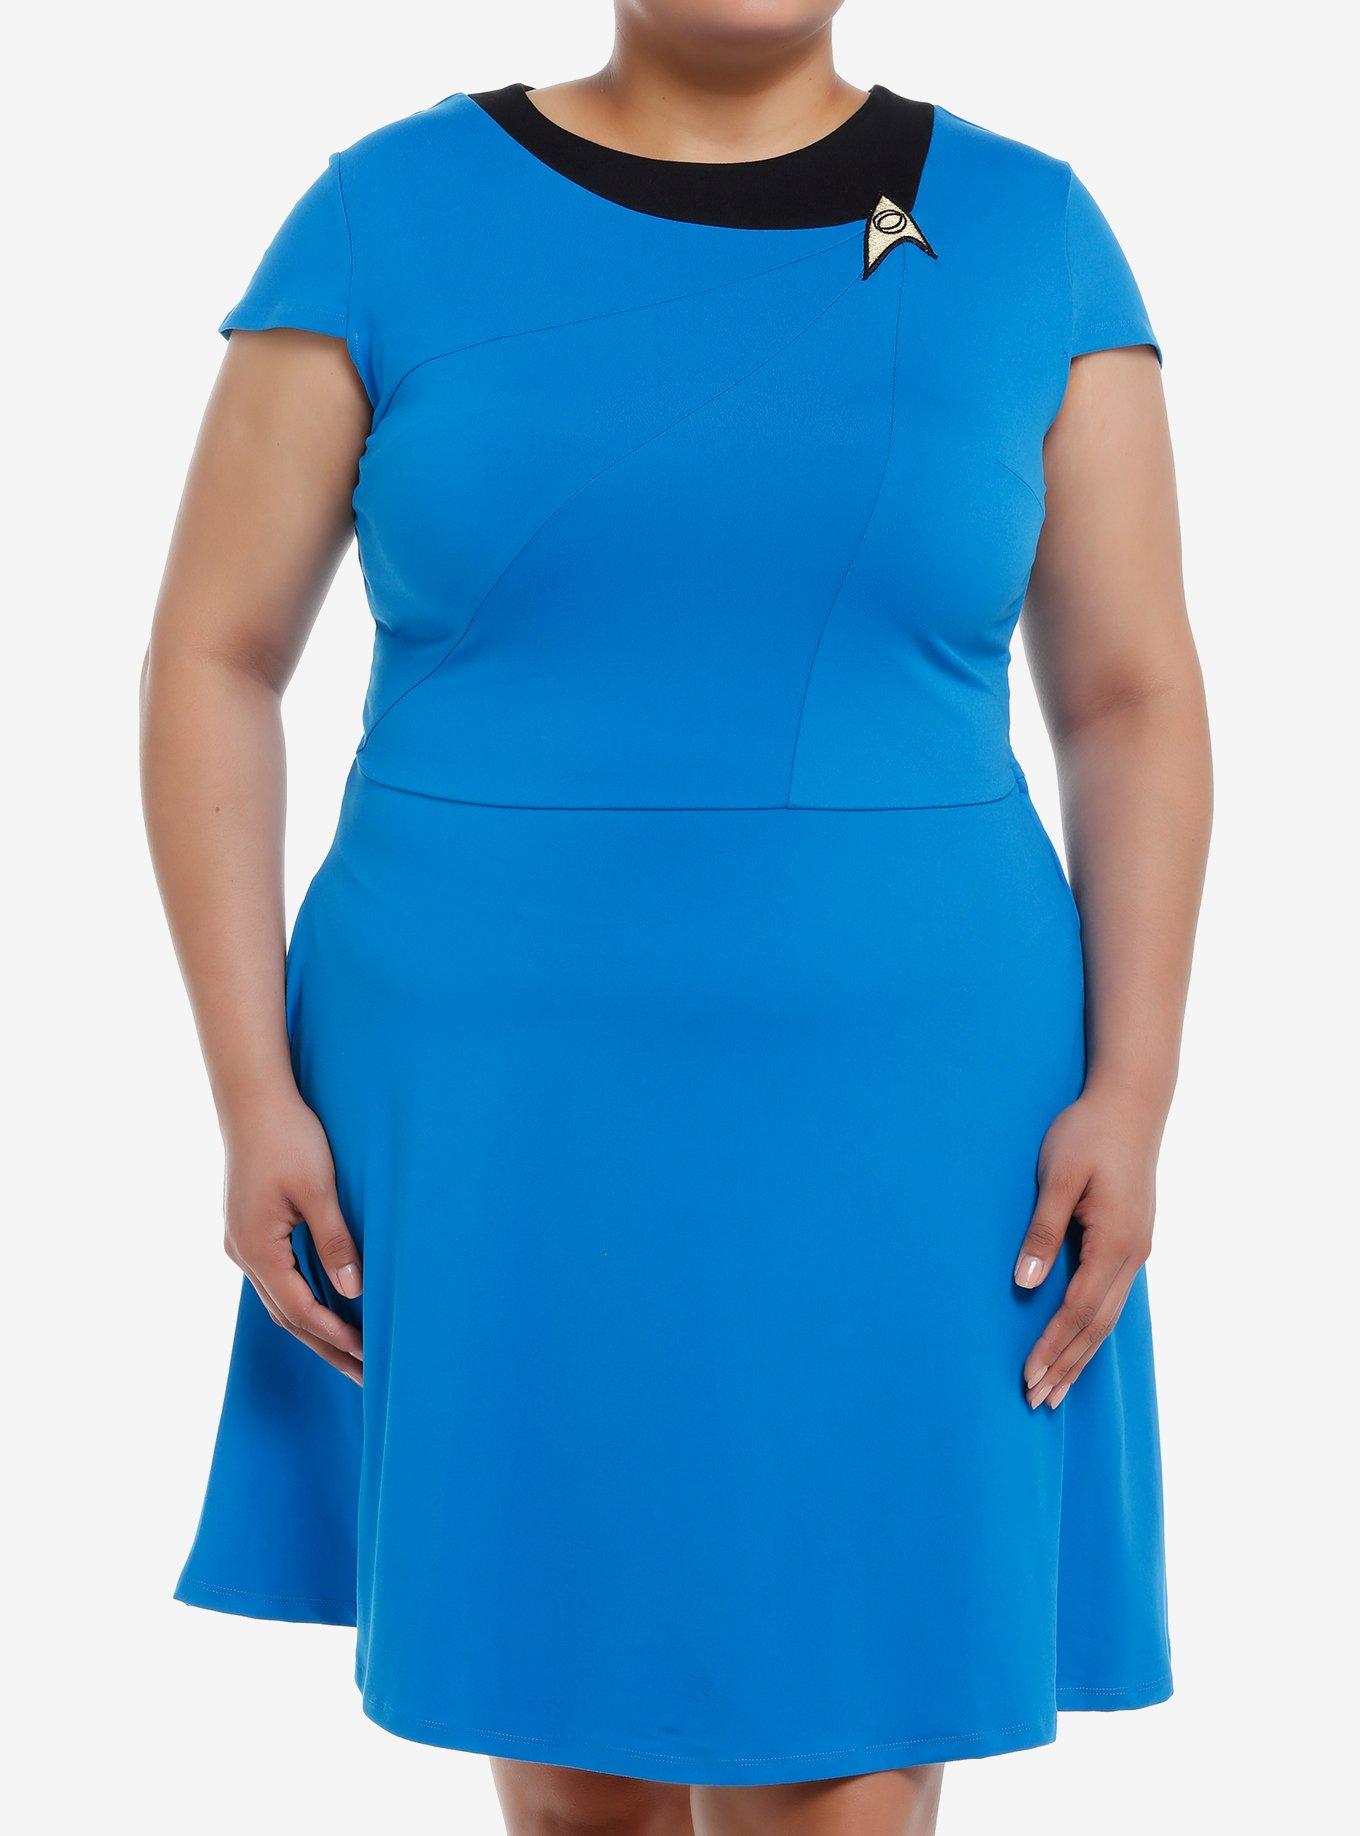 Her Universe Star Trek Sciences Uniform Dress Plus Size Her Universe Exclusive, , hi-res